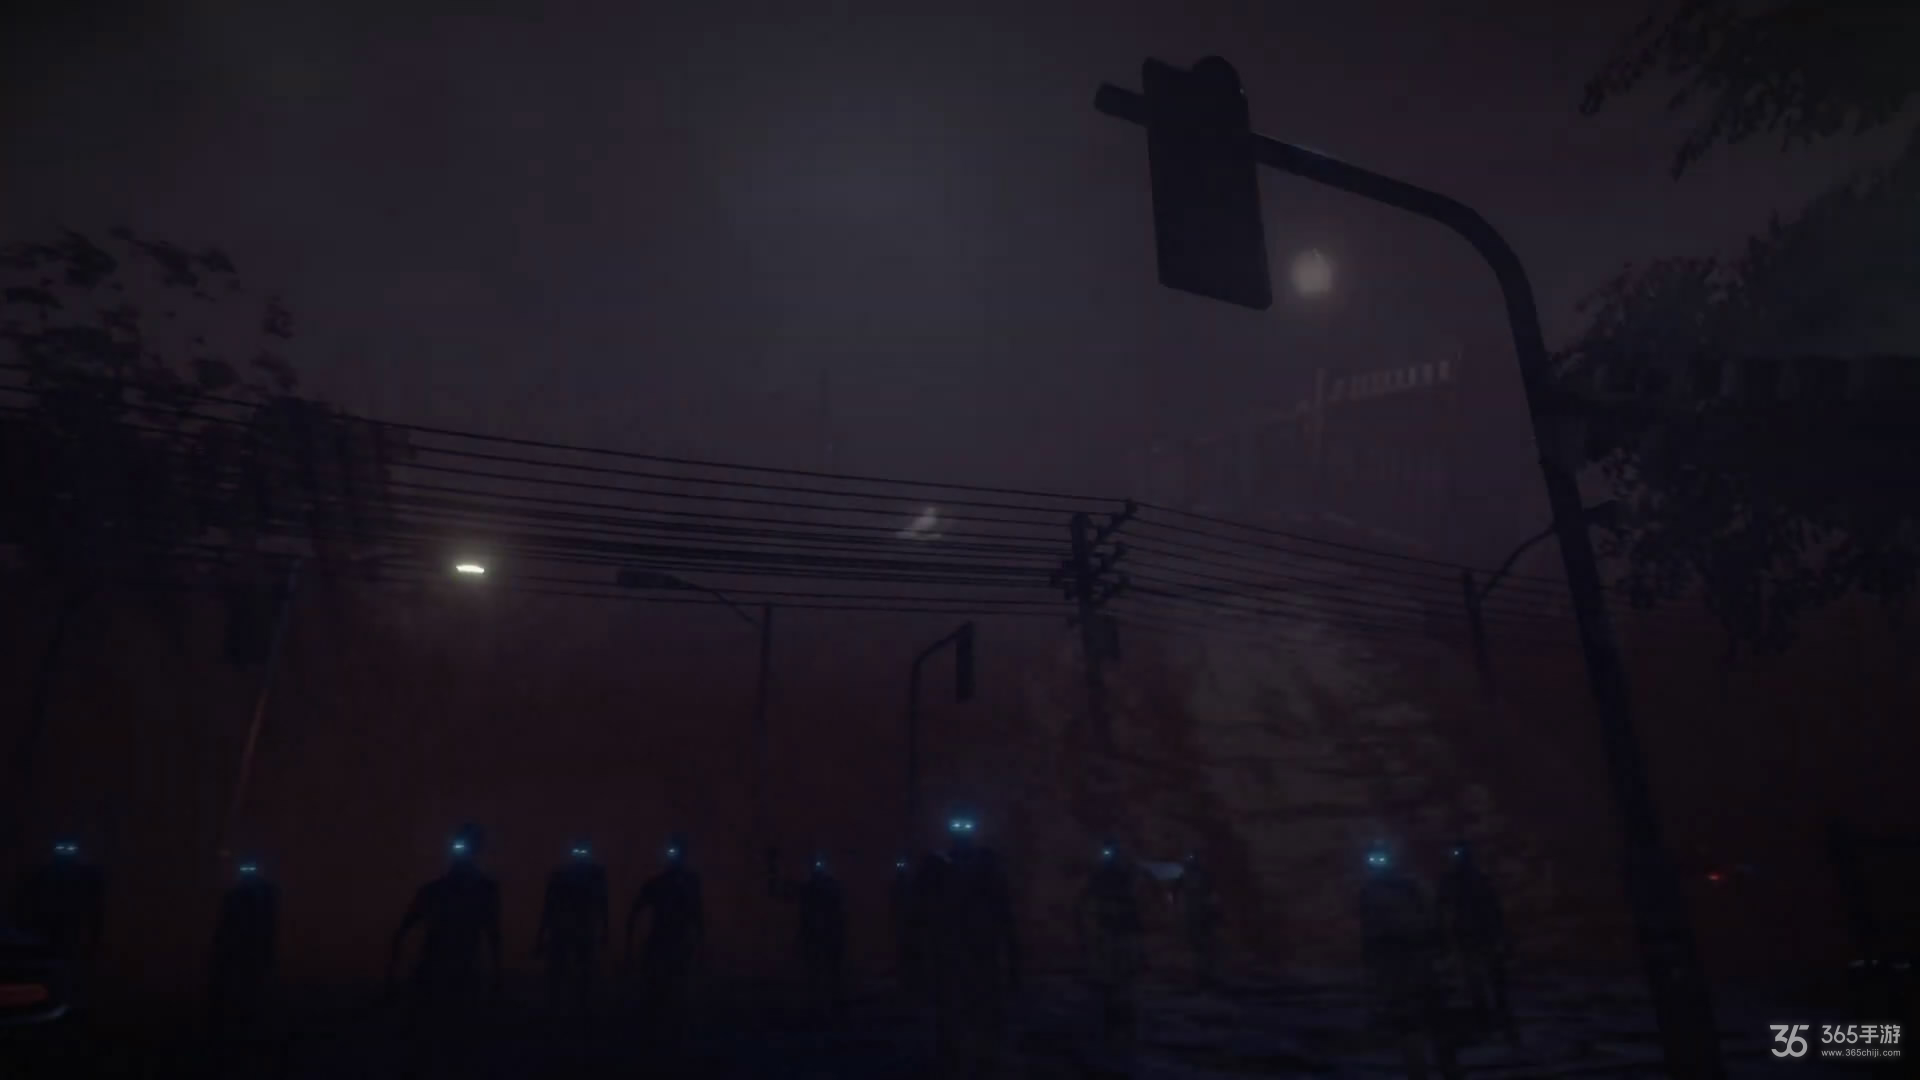 恐怖游戏《遗留之人》预告 探索荒凉而诡异的小镇